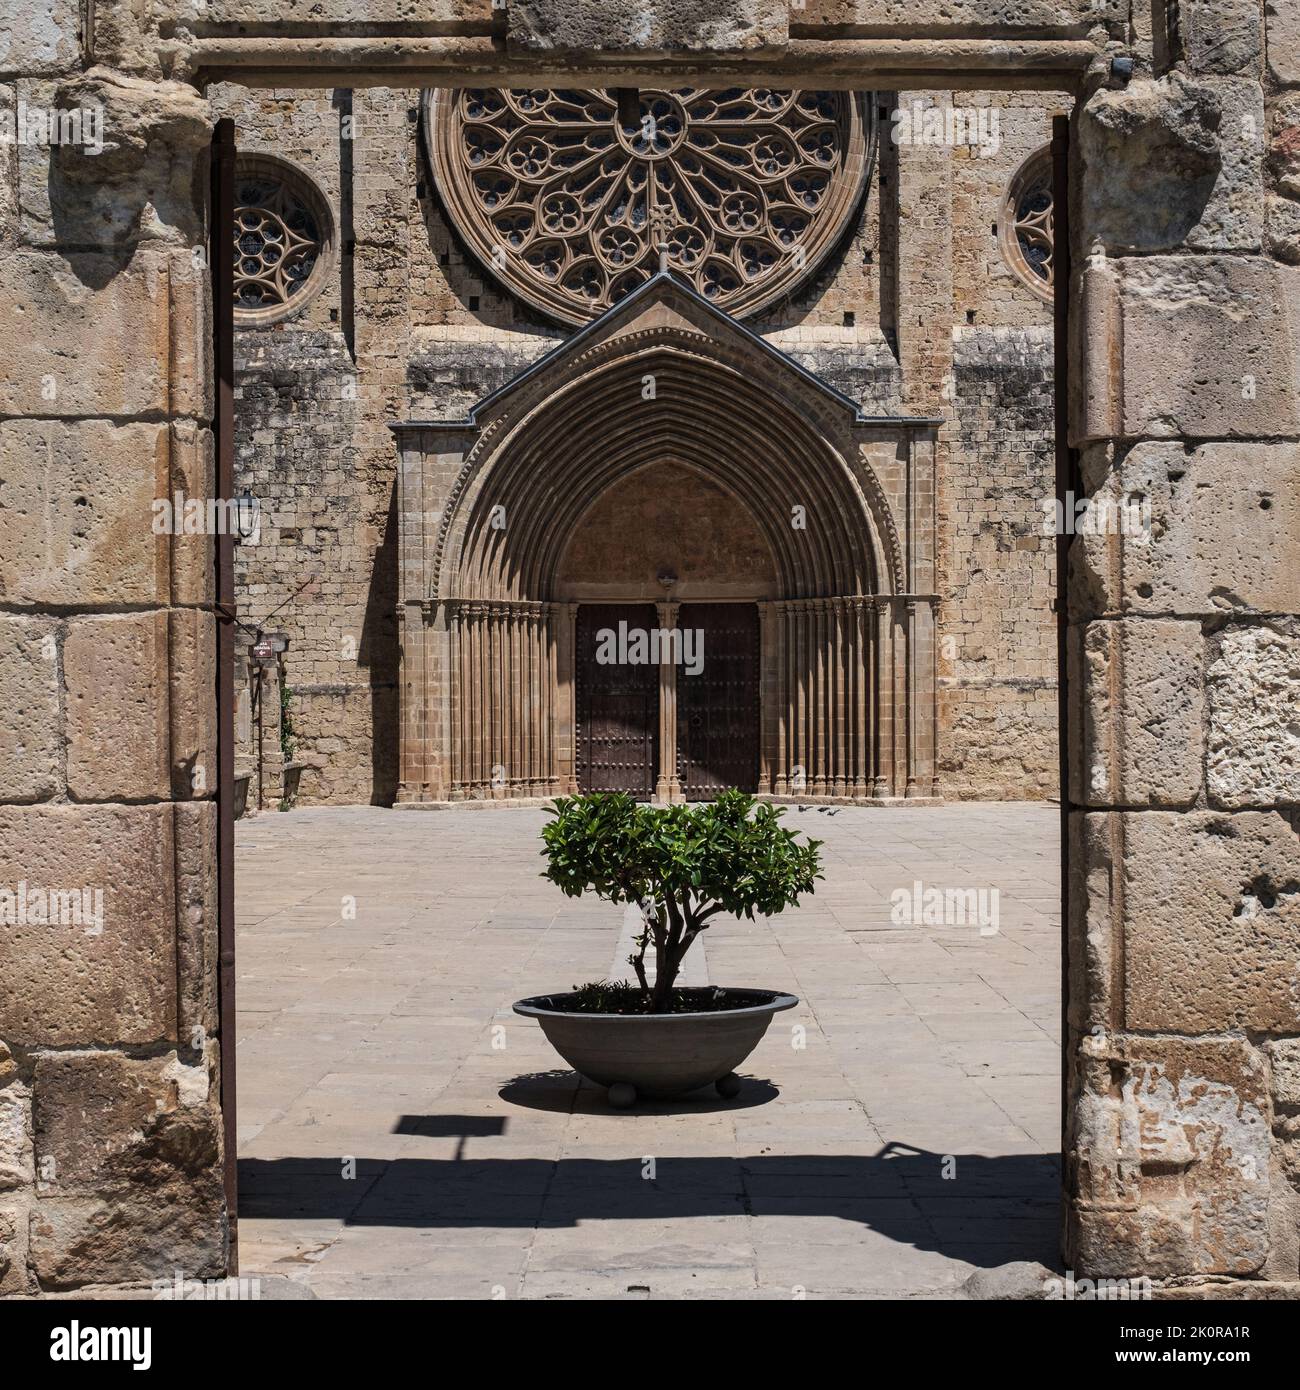 Vue sur l'entrée principale du monastère de Sant Cugat del Vallès, une ancienne abbaye bénédictine qui donne son nom à cette ville catalane. Banque D'Images